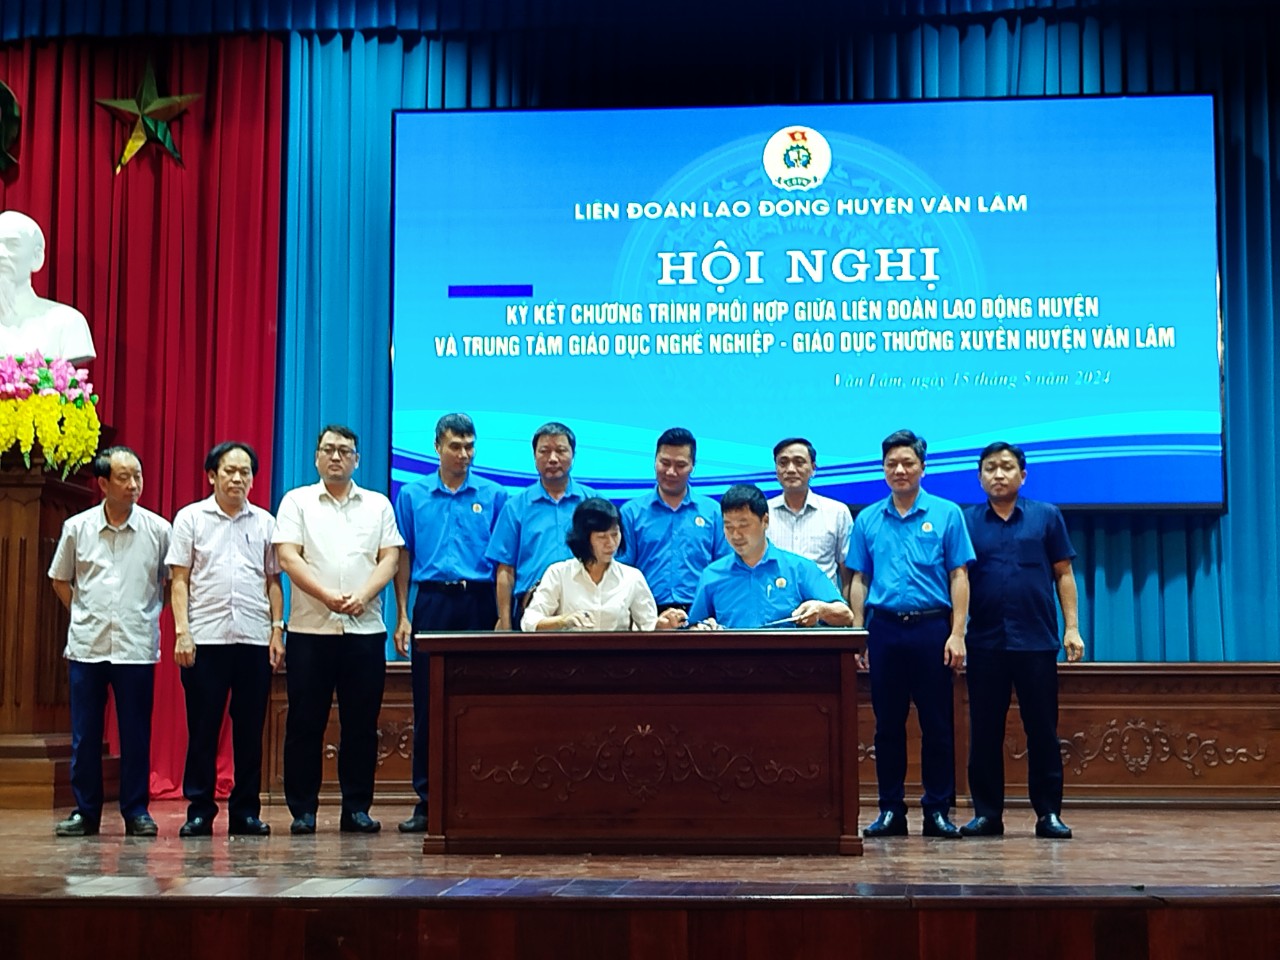 LĐLĐ huyện Văn Lâm thành lập nghiệp đoàn cơ sở, ký kết phối hợp với Trung tâm GDNN-GDTX trong công tác đào tạo nghề cho đoàn viên, công nhân lao động